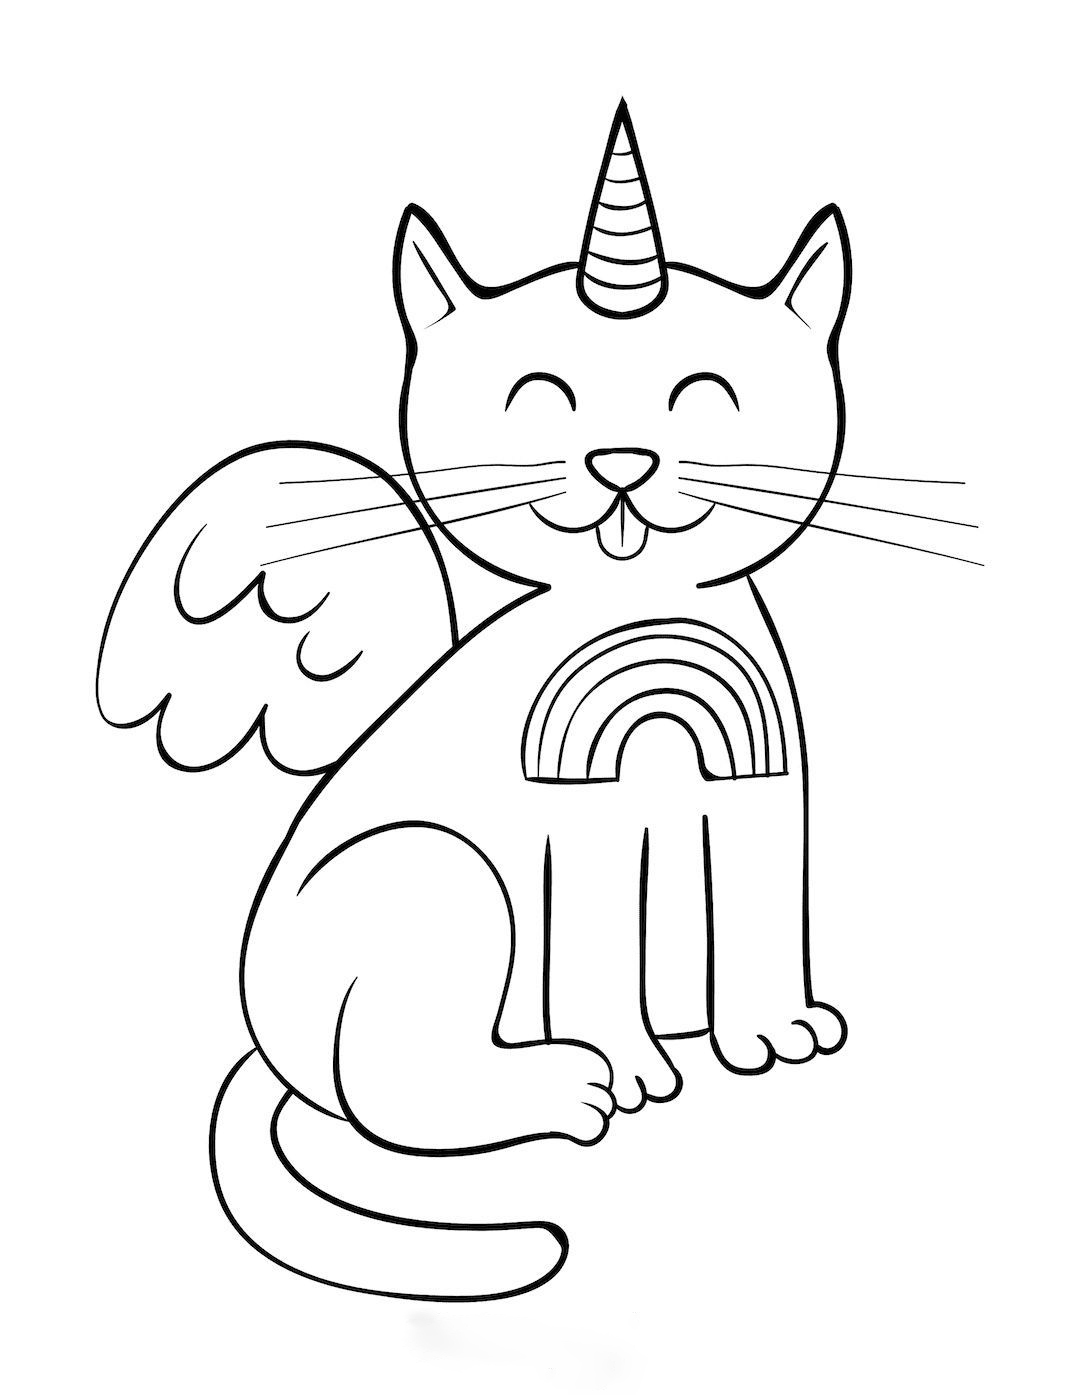 Desenho de gato unicórnio com asas para colorir